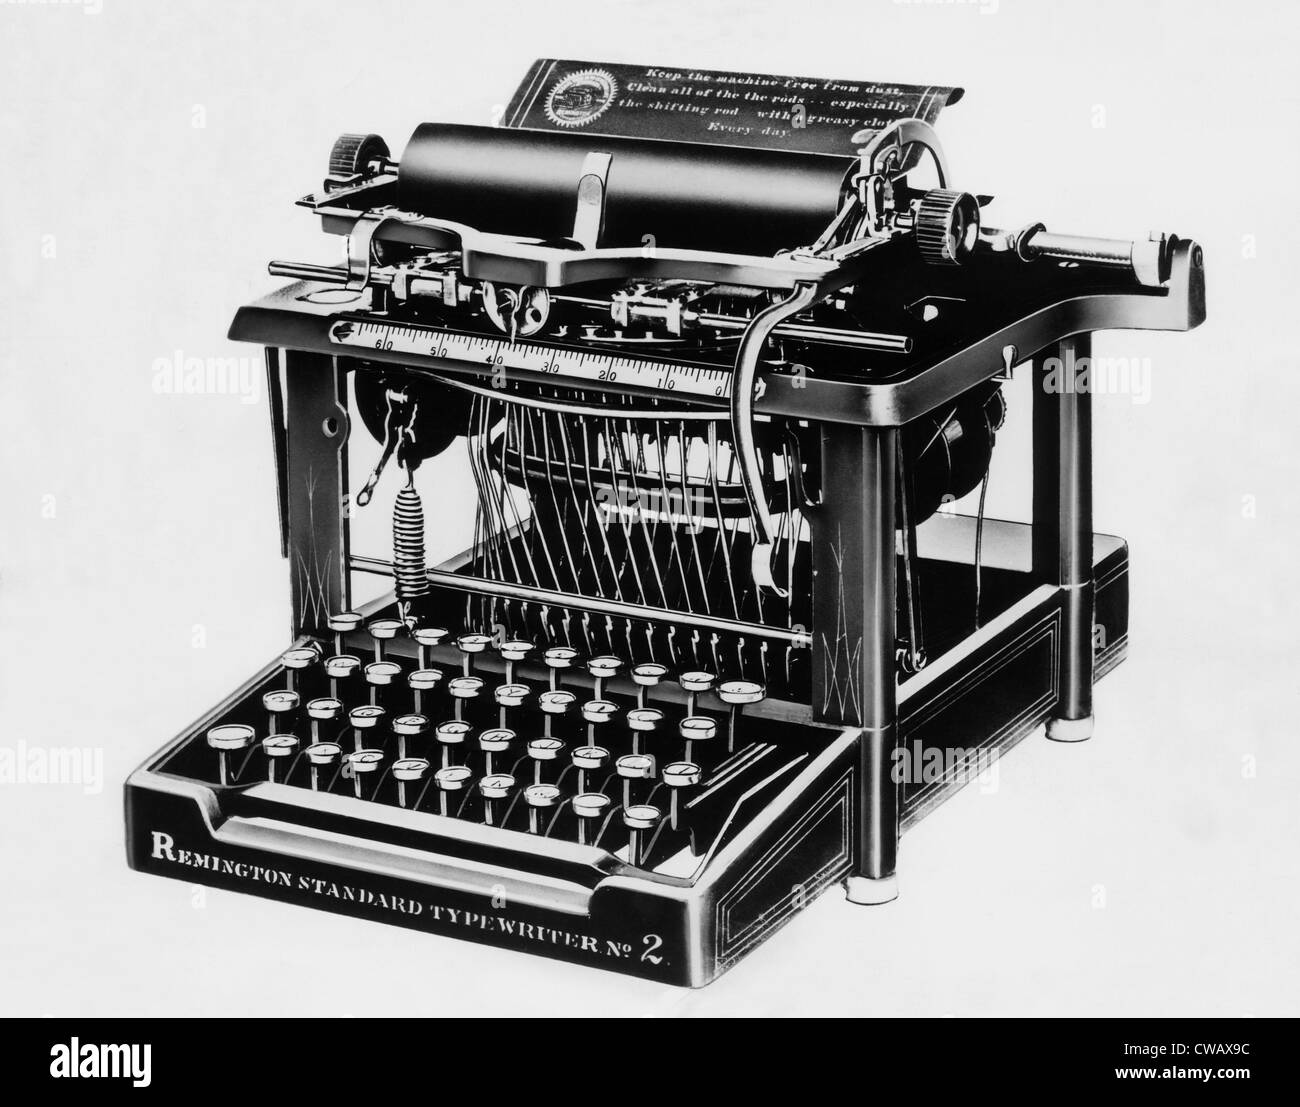 La Remington #2, la prima macchina da scrivere in grado di stampare lettere minuscole e maiuscole, circa 1878. La cortesia: CSU Foto Stock